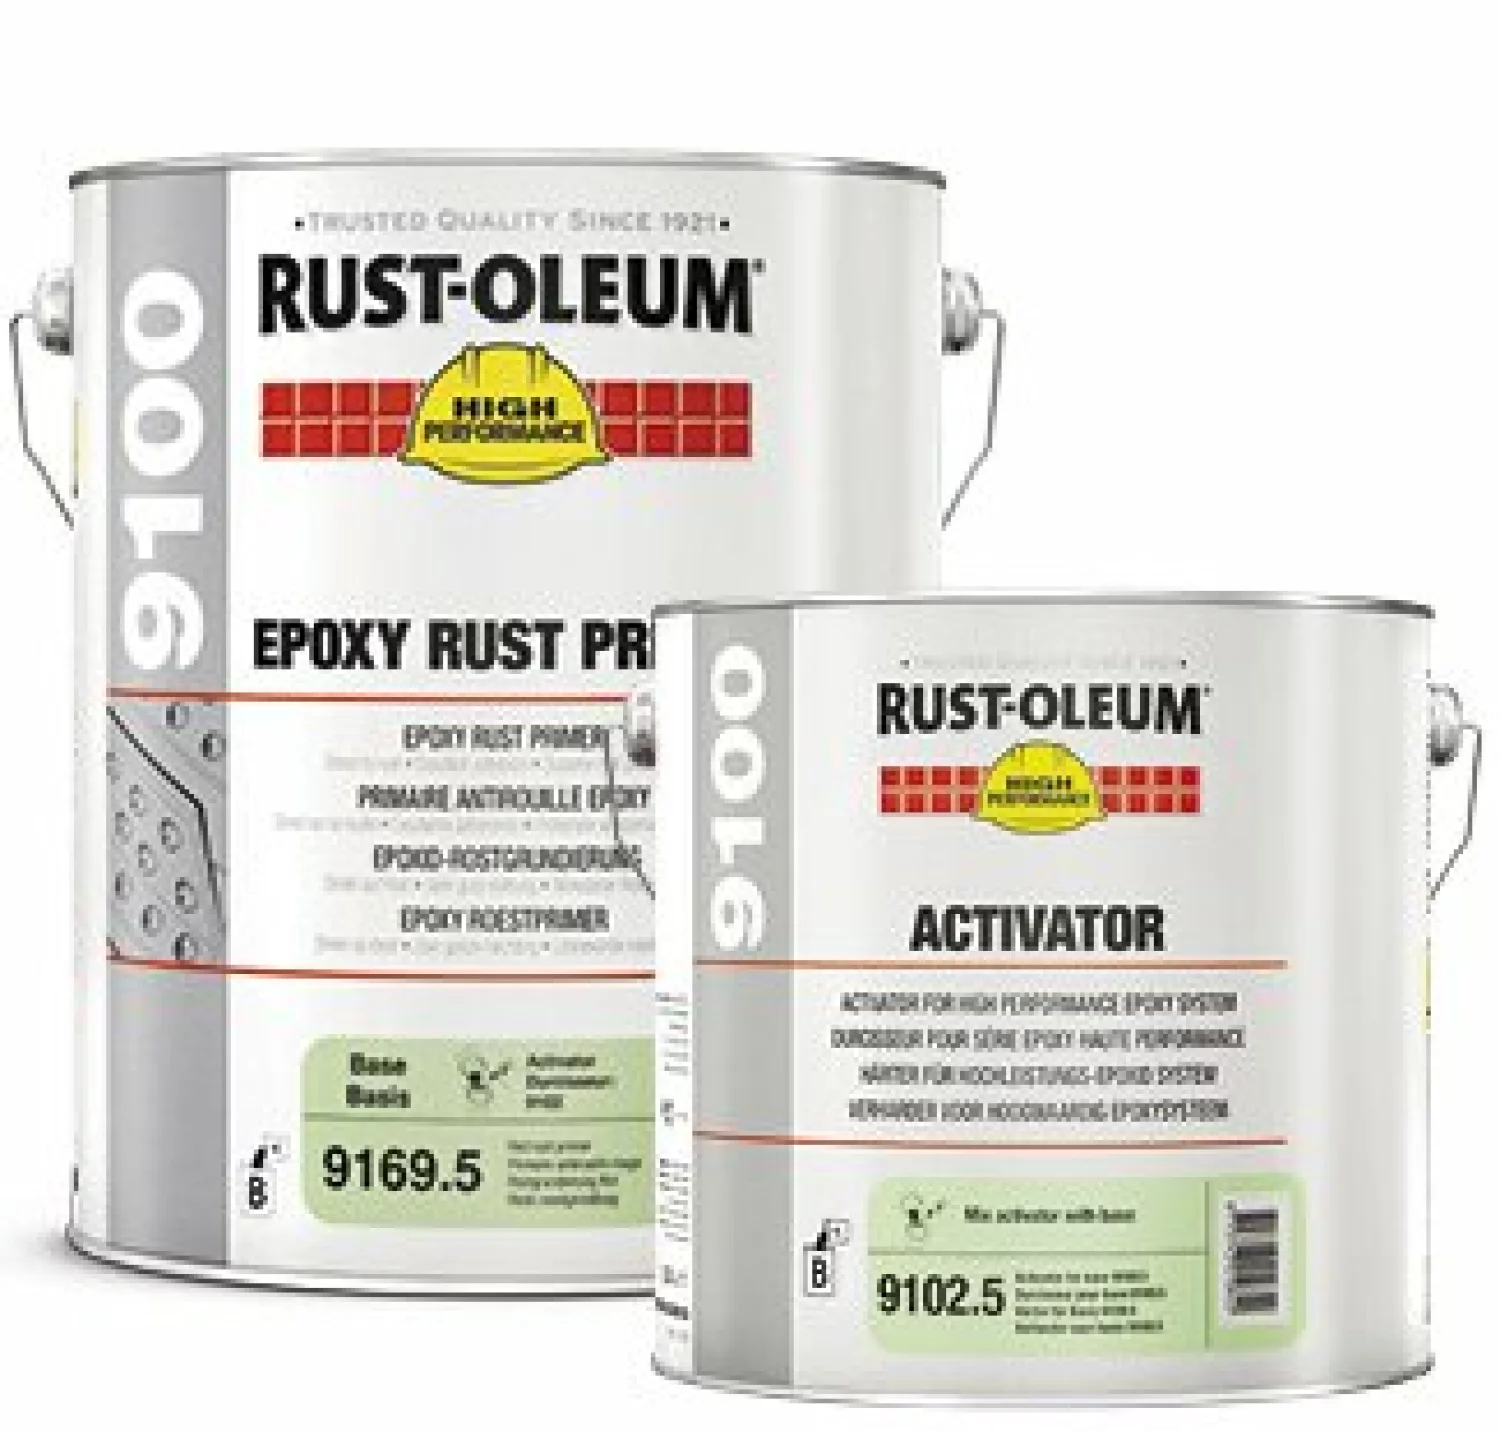 Rust-Oleum 9100 Epoxy Rust Primer - Red 5L (9169.5) incl. Activator (9102.5)